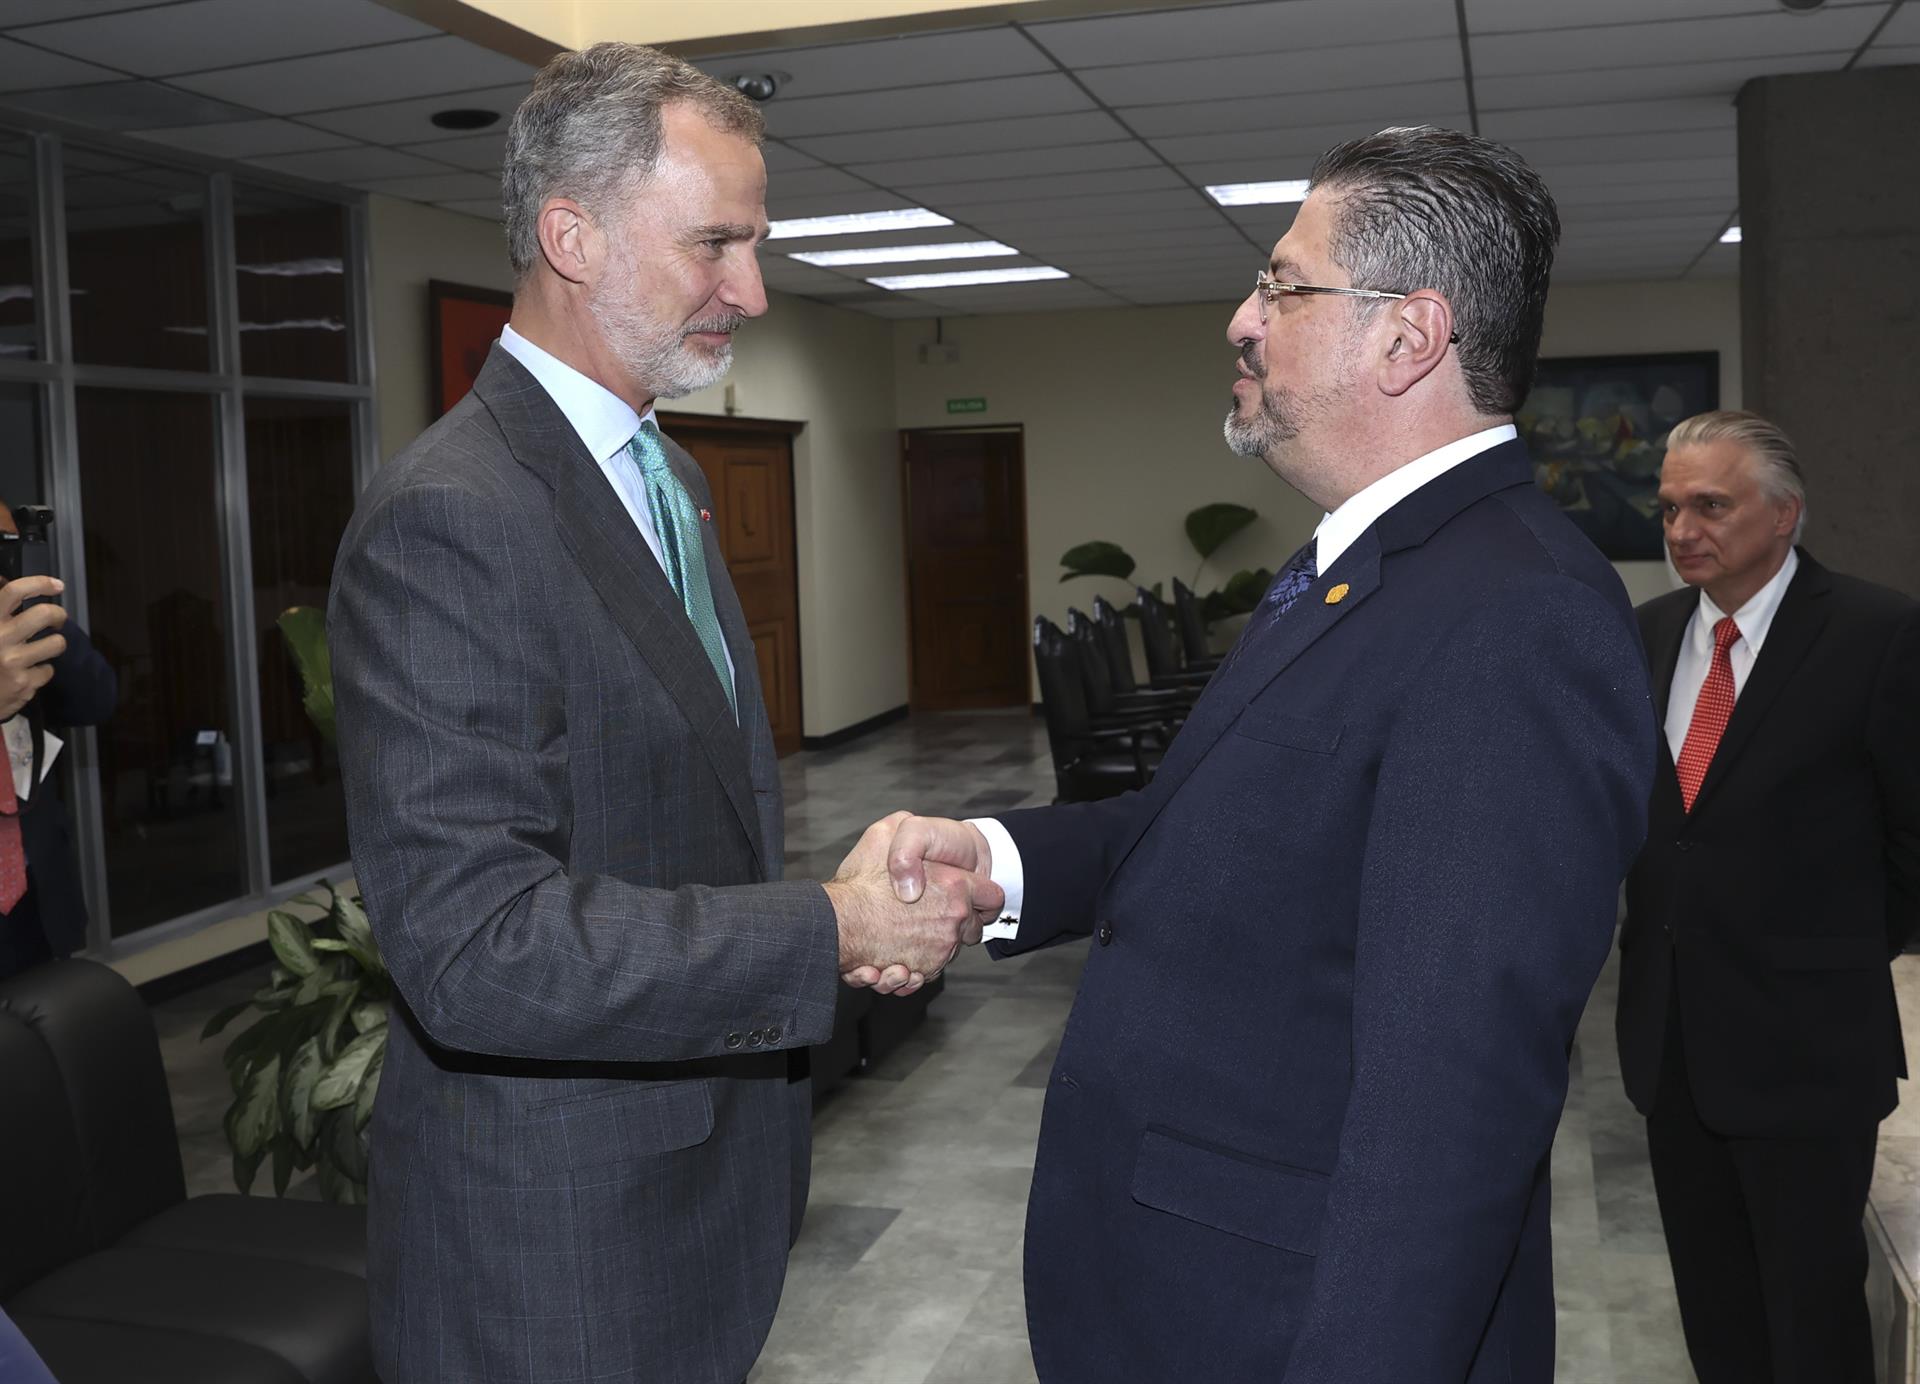 El Rey Felipe VI se reunió con el presidente electo de Costa Rica y estrecharon lazos